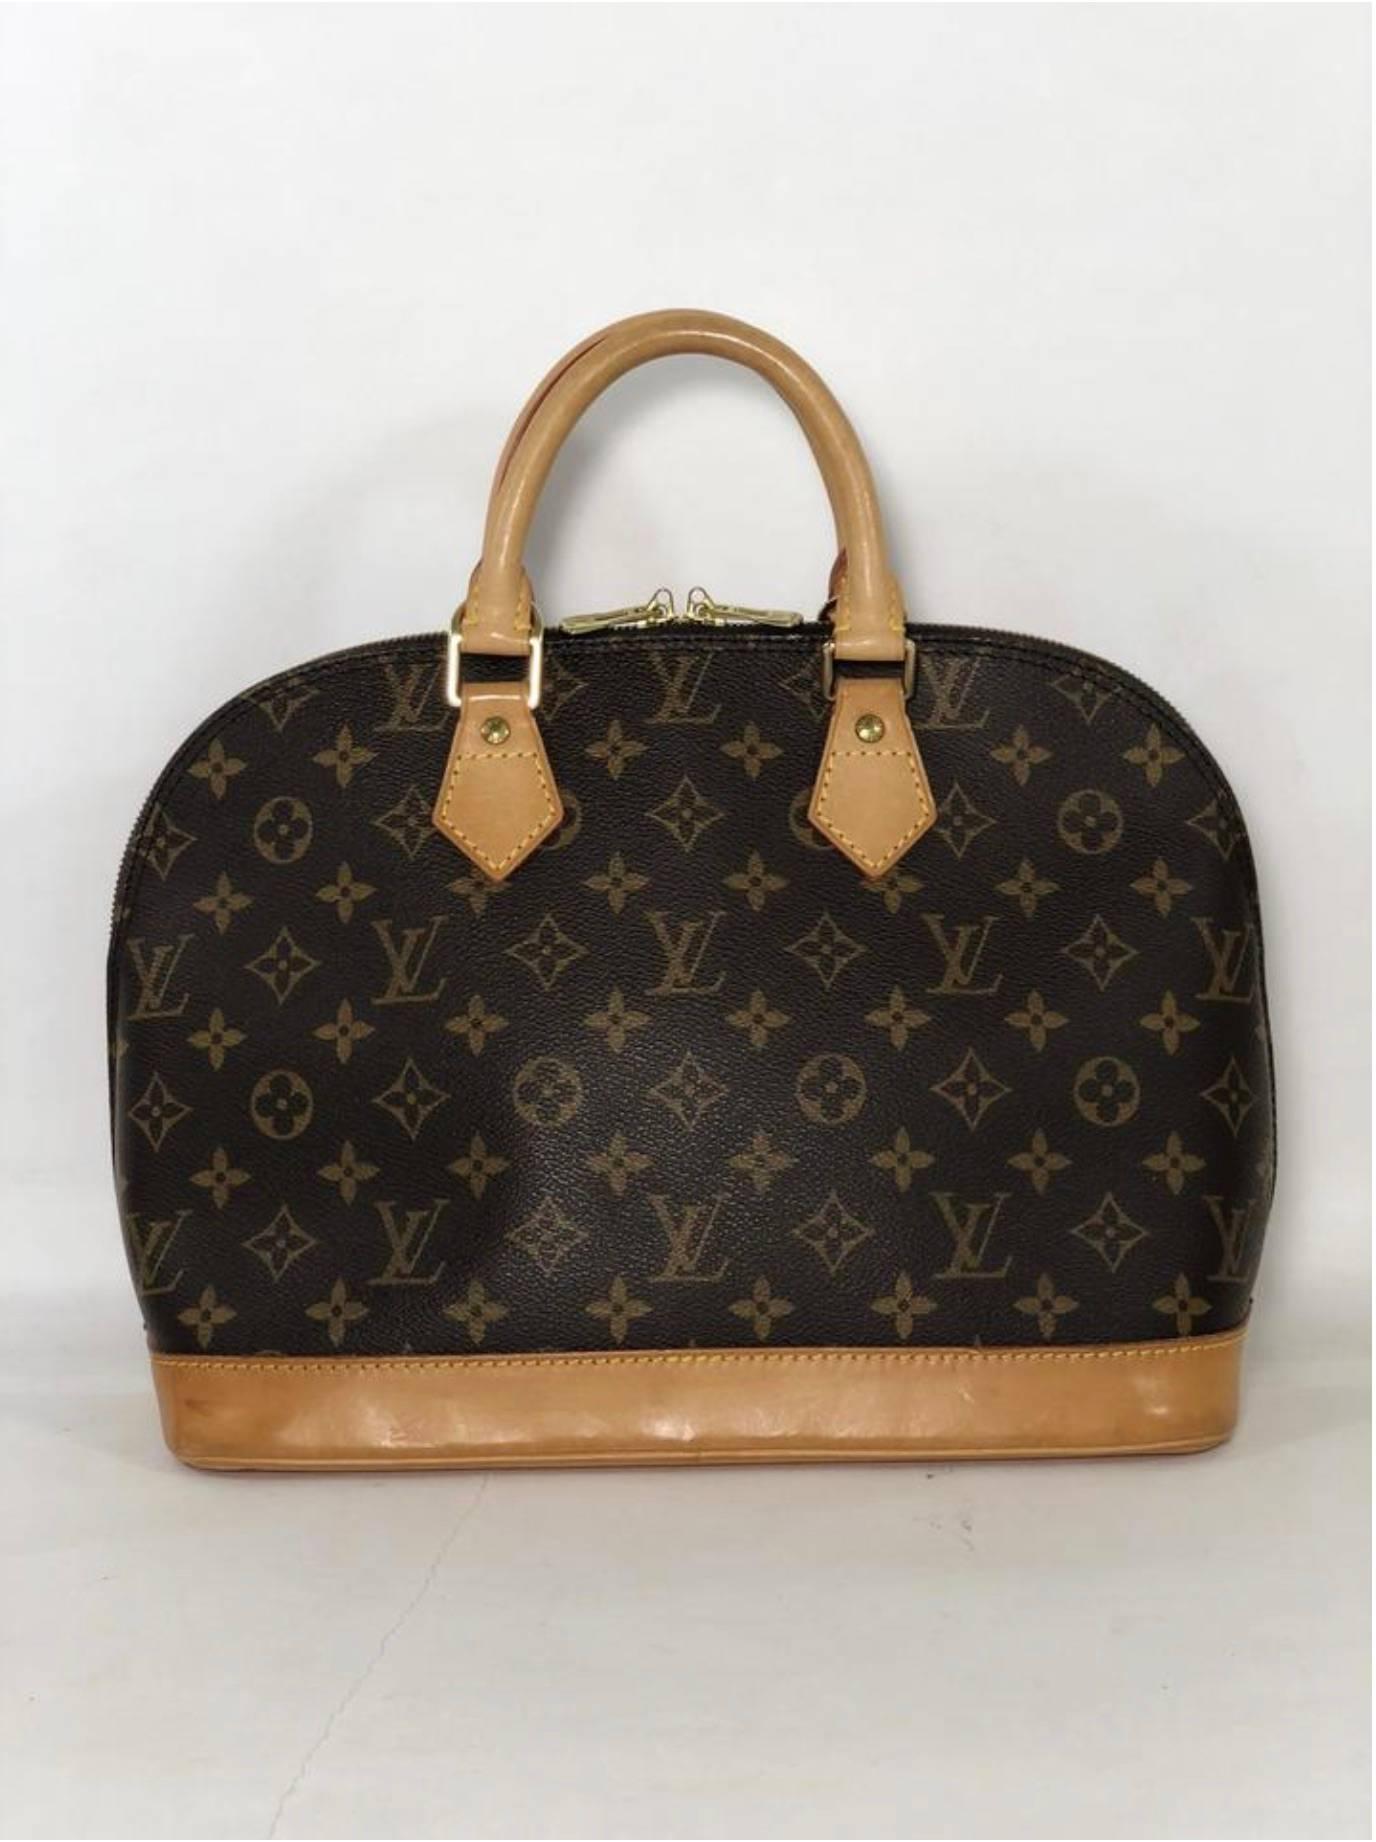 Women's or Men's Louis Vuitton Monogram Alma PM Satchel Handbag For Sale